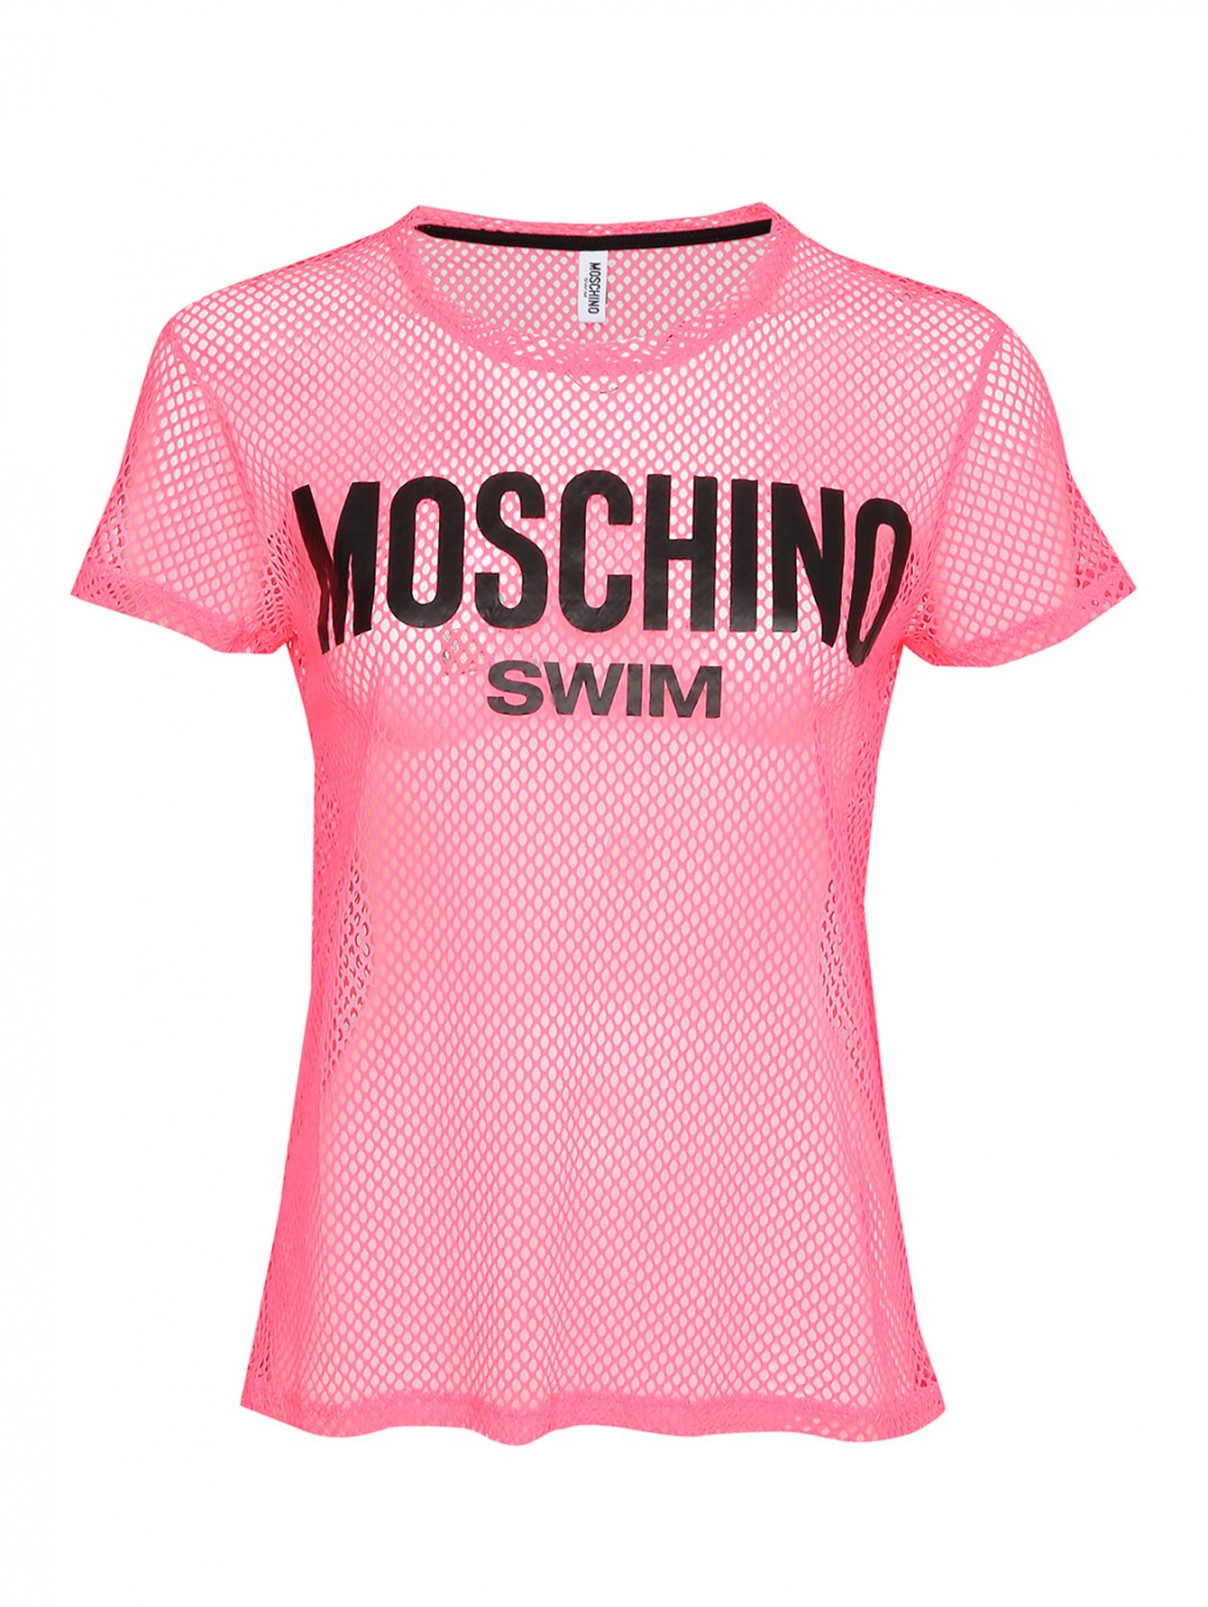 футболка в сетку с принтом Moschino Swim  –  Общий вид  – Цвет:  Розовый